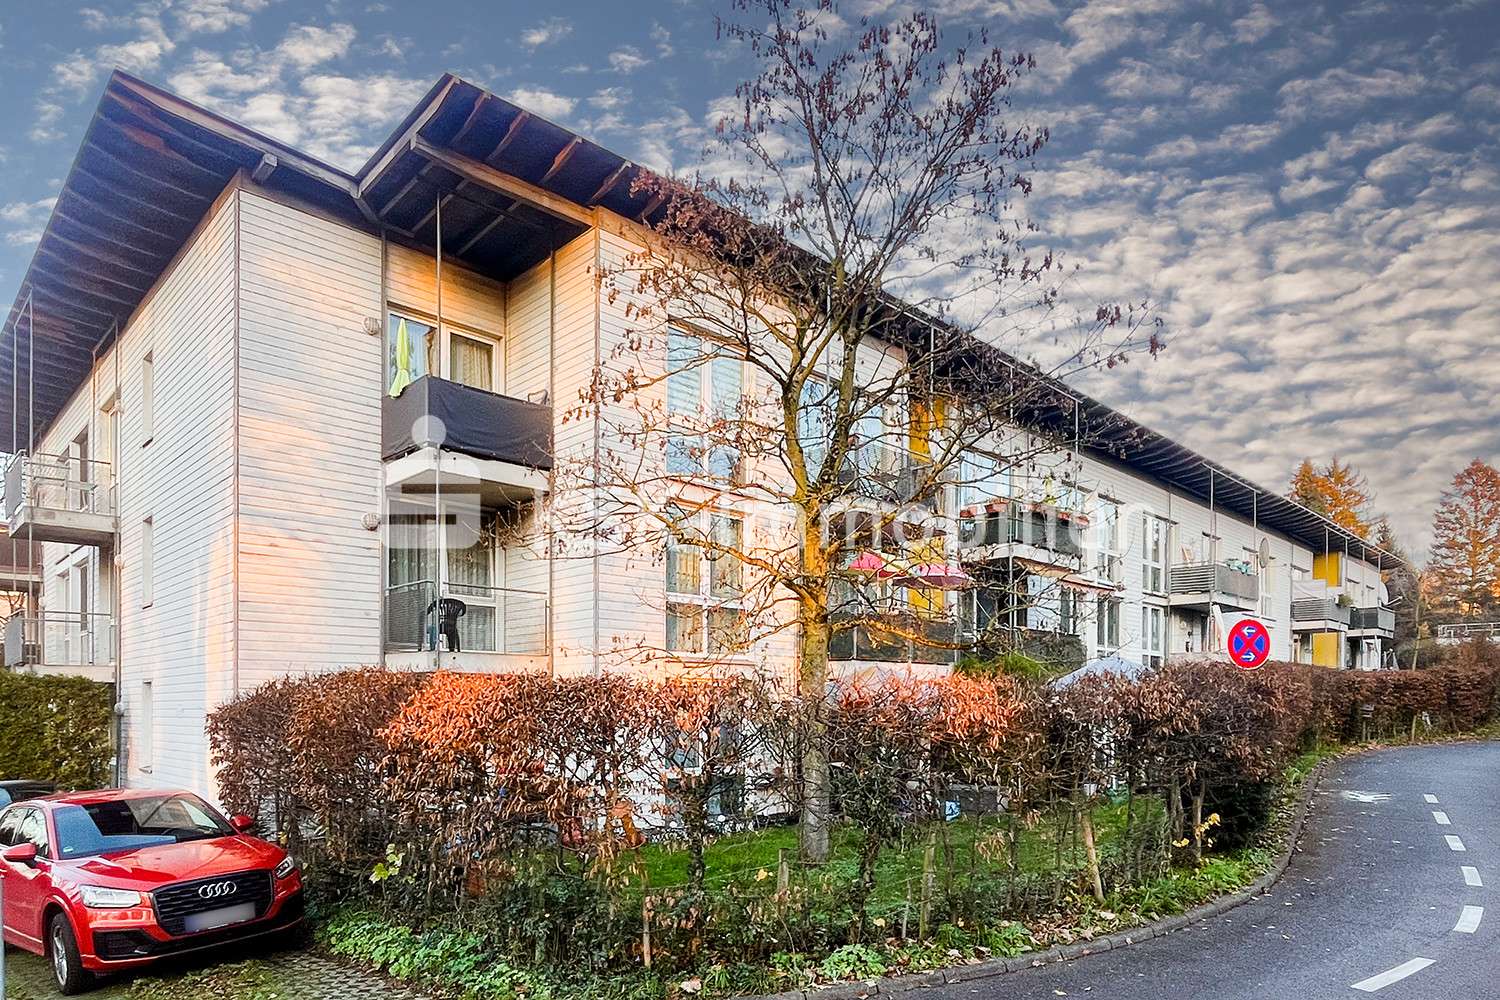 111552 Seitenansicht - Mehrfamilienhaus in 51465 Bergisch Gladbach mit 1538m² als Kapitalanlage günstig kaufen